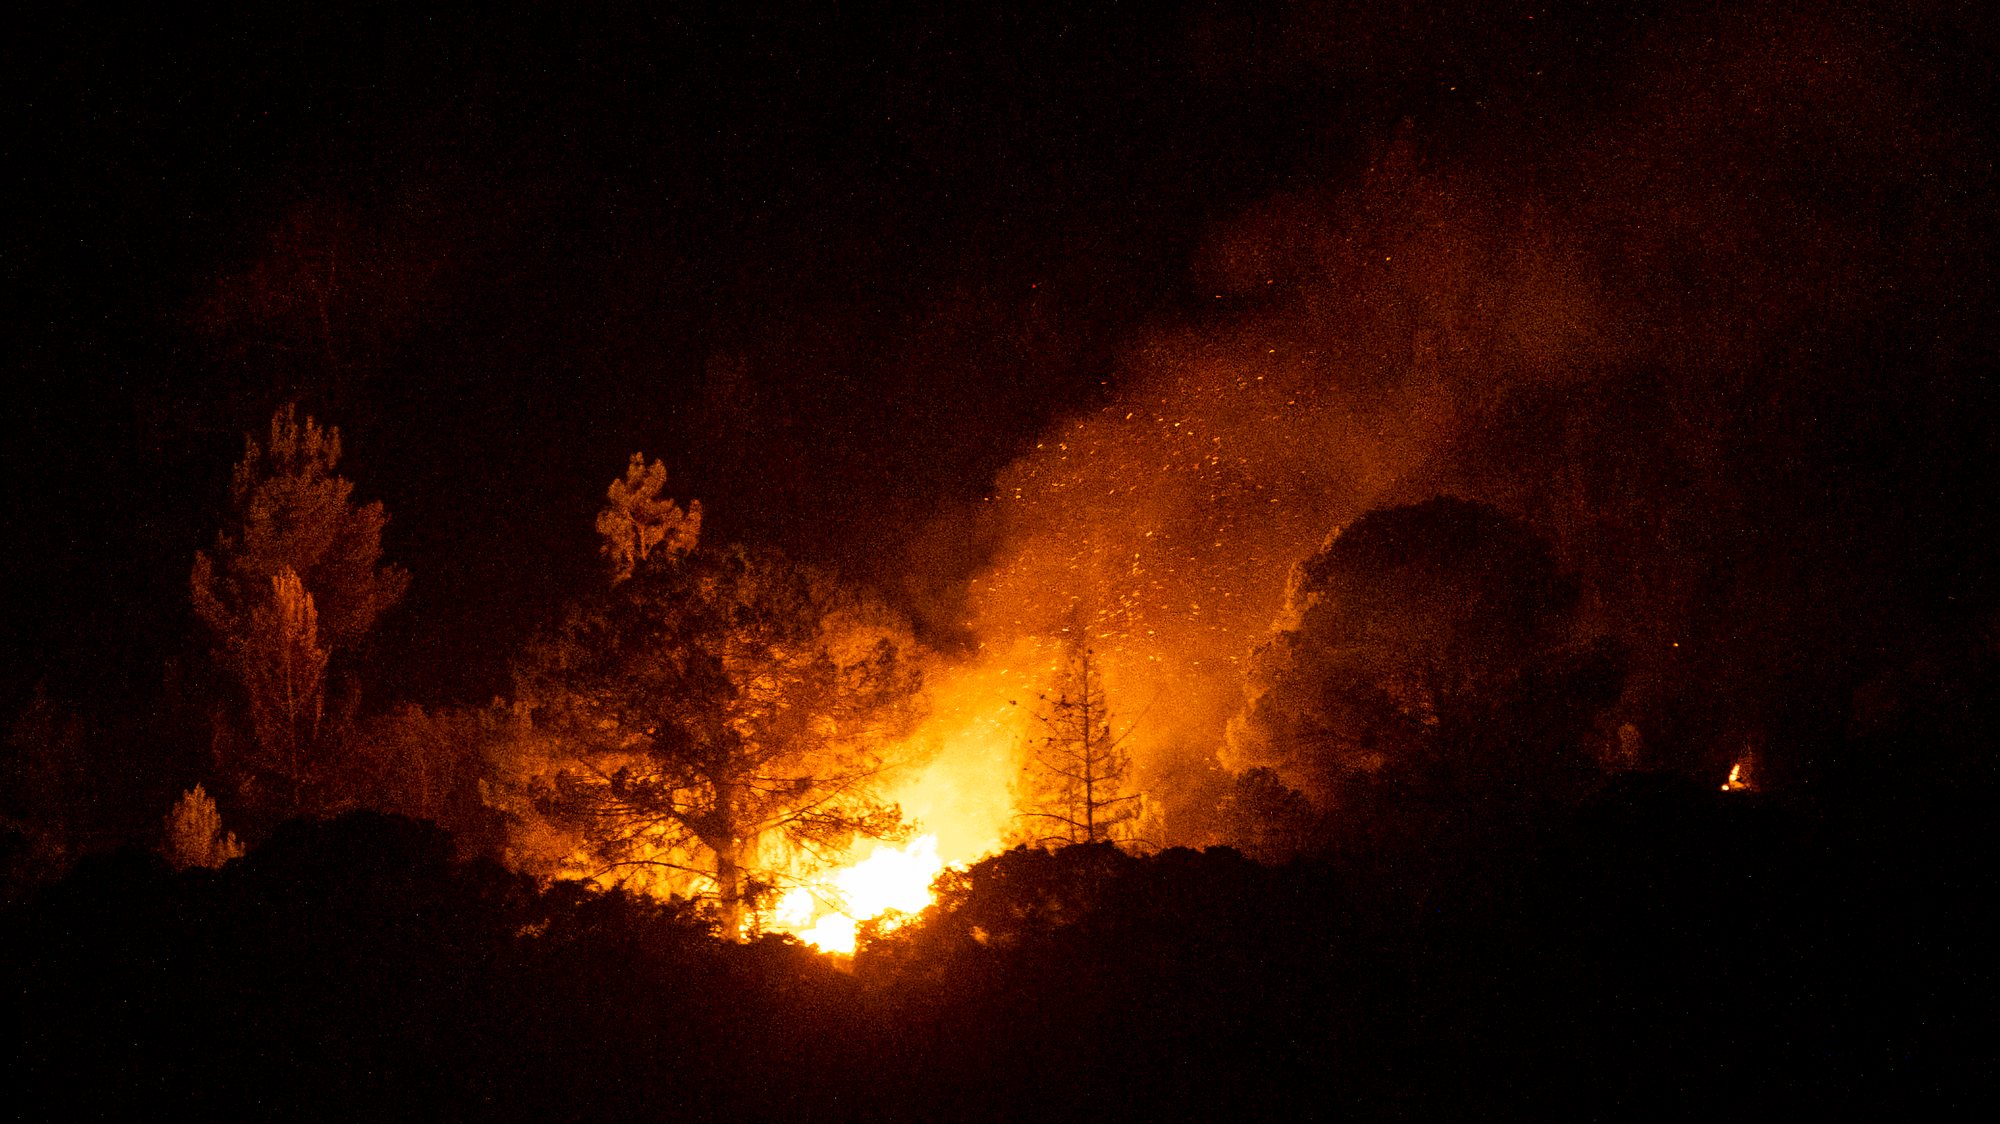 Em Chaves, o incêndio atingiu cinco freguesias, num total de 10 aldeias